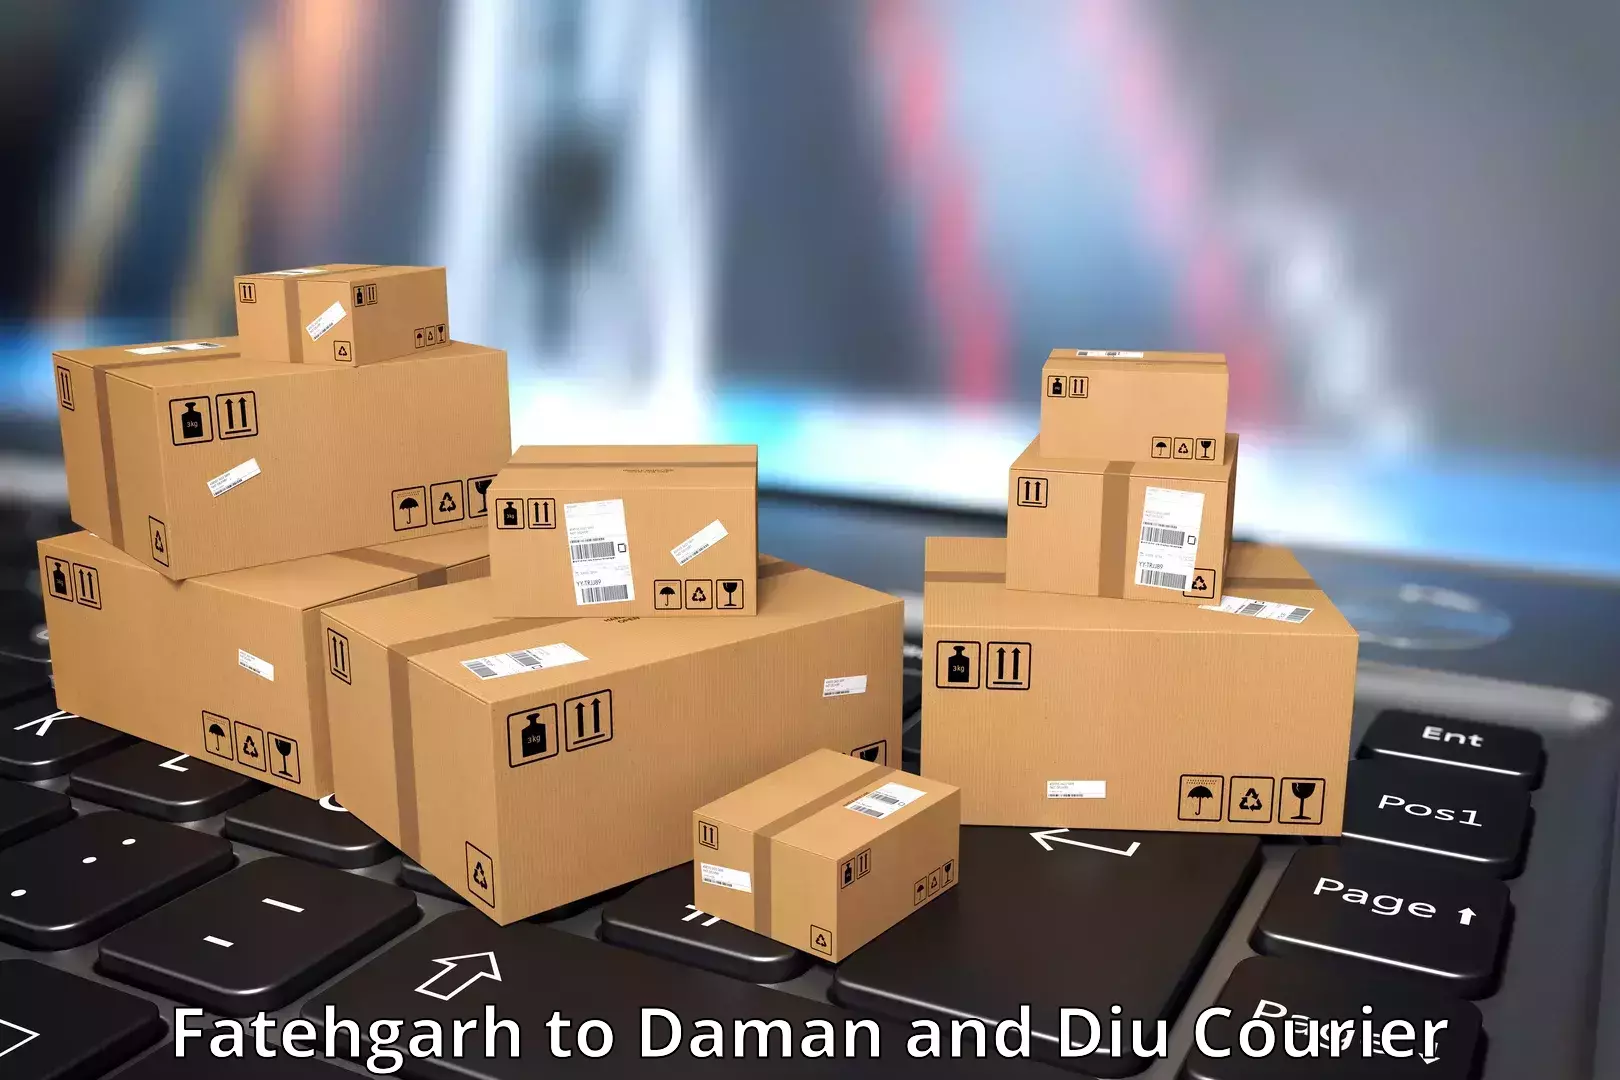 Regular parcel service Fatehgarh to Daman and Diu